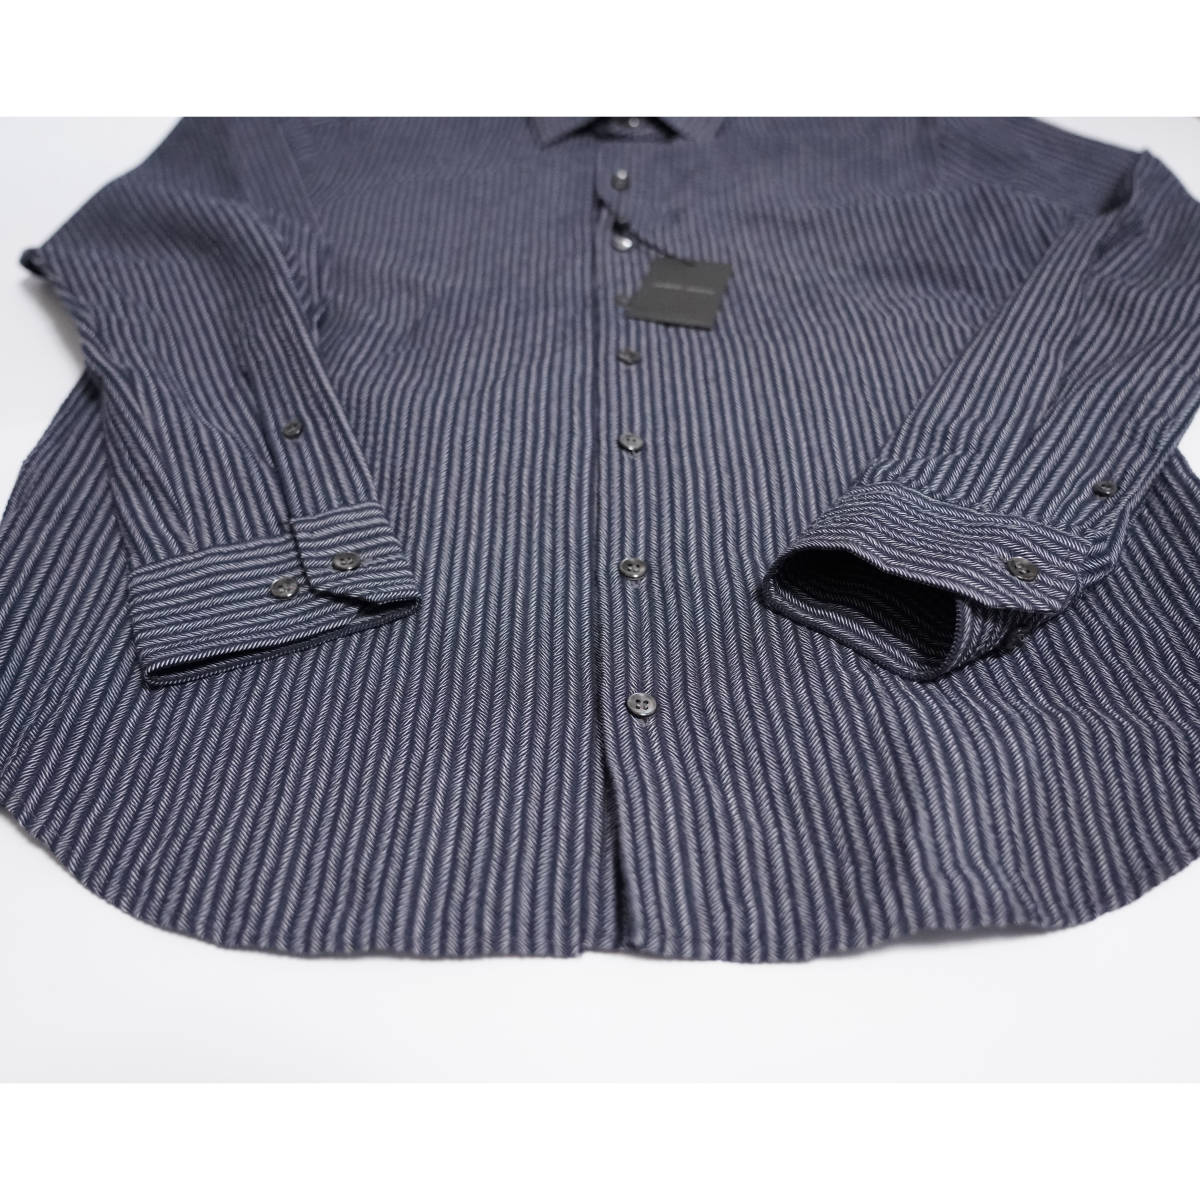  стандартный item супер высококлассный рубашка GIORGIO ARMANI 41 размер рубашка с длинным рукавом M размер joru geo Armani ткань эффект полоса 